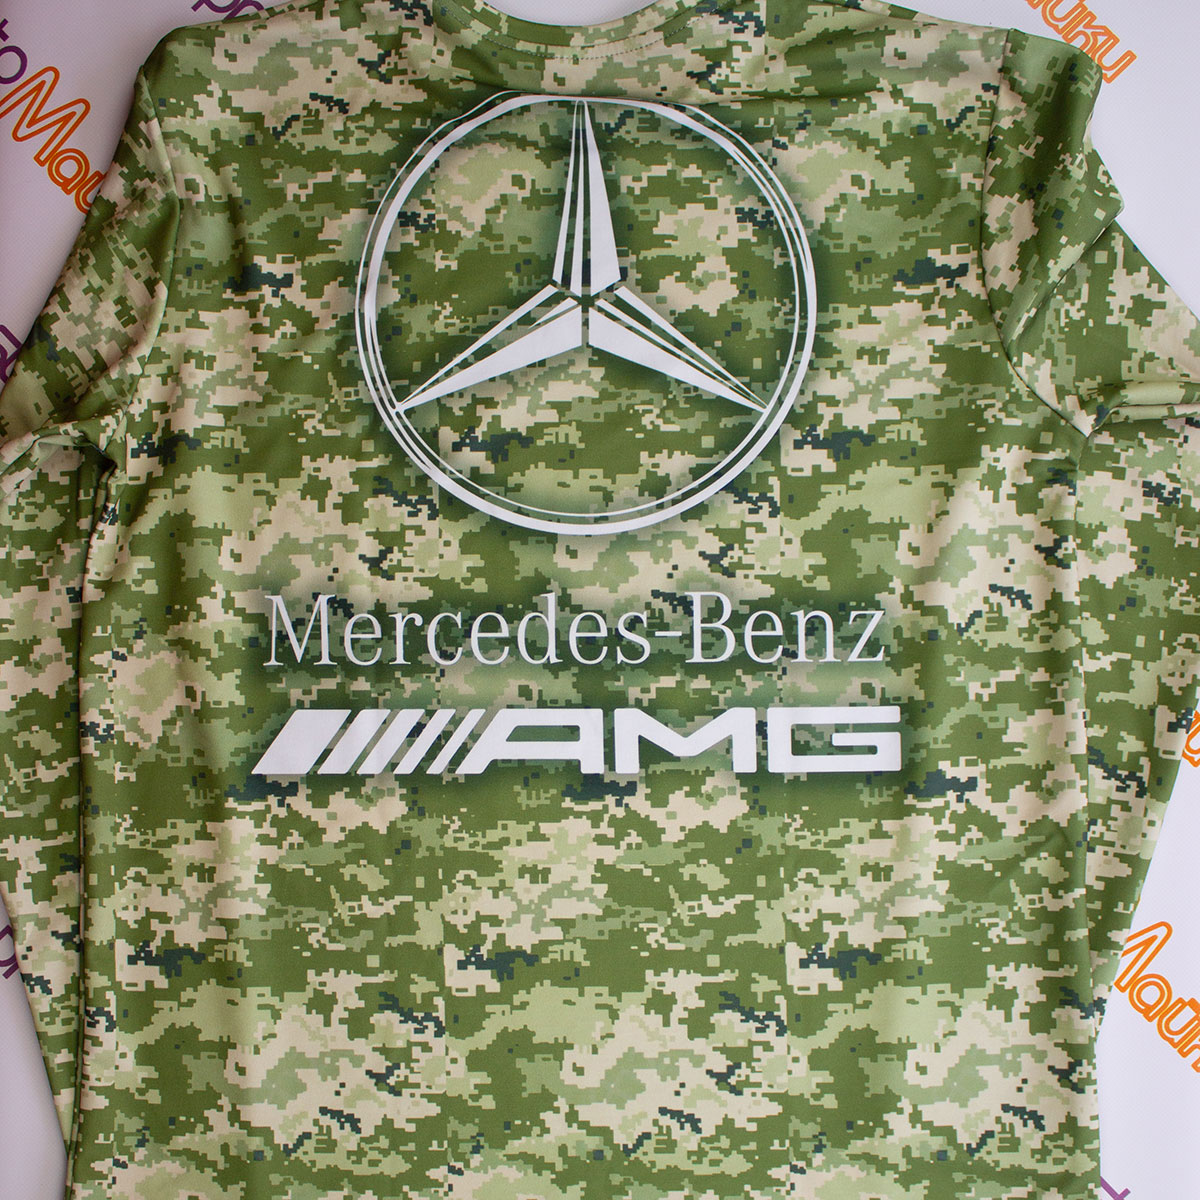 Детская футболка Mercedes-Benz AMG